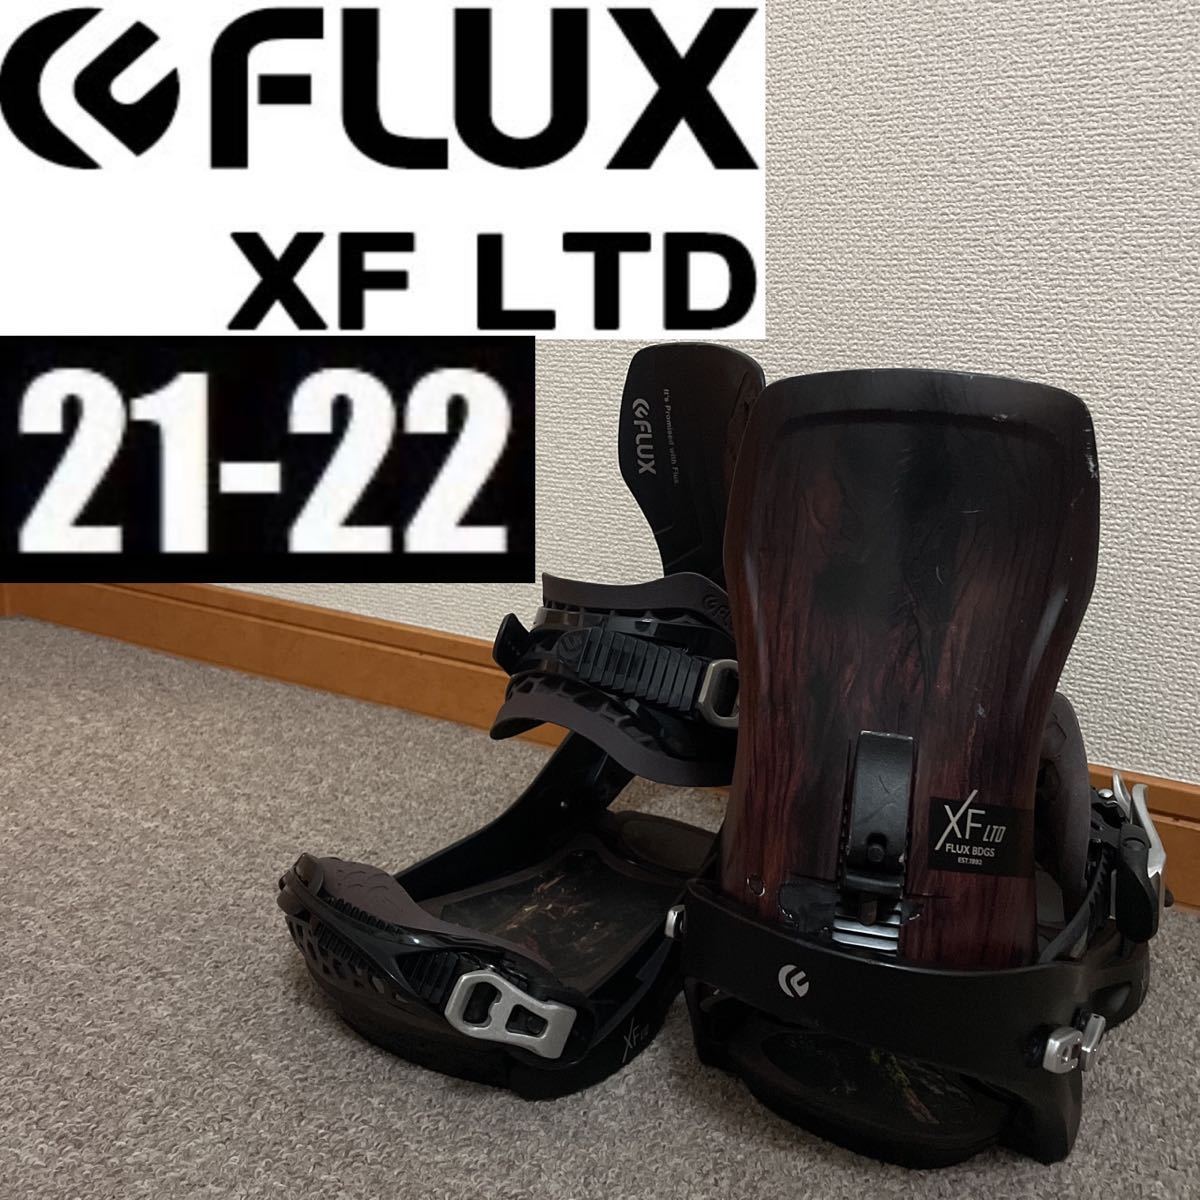 21-22 FLUX XF LTD XF-LTD バインディング ビンディング Mサイズ M スノーボード スノボ メンズ キッカー パーク カービング カーボン